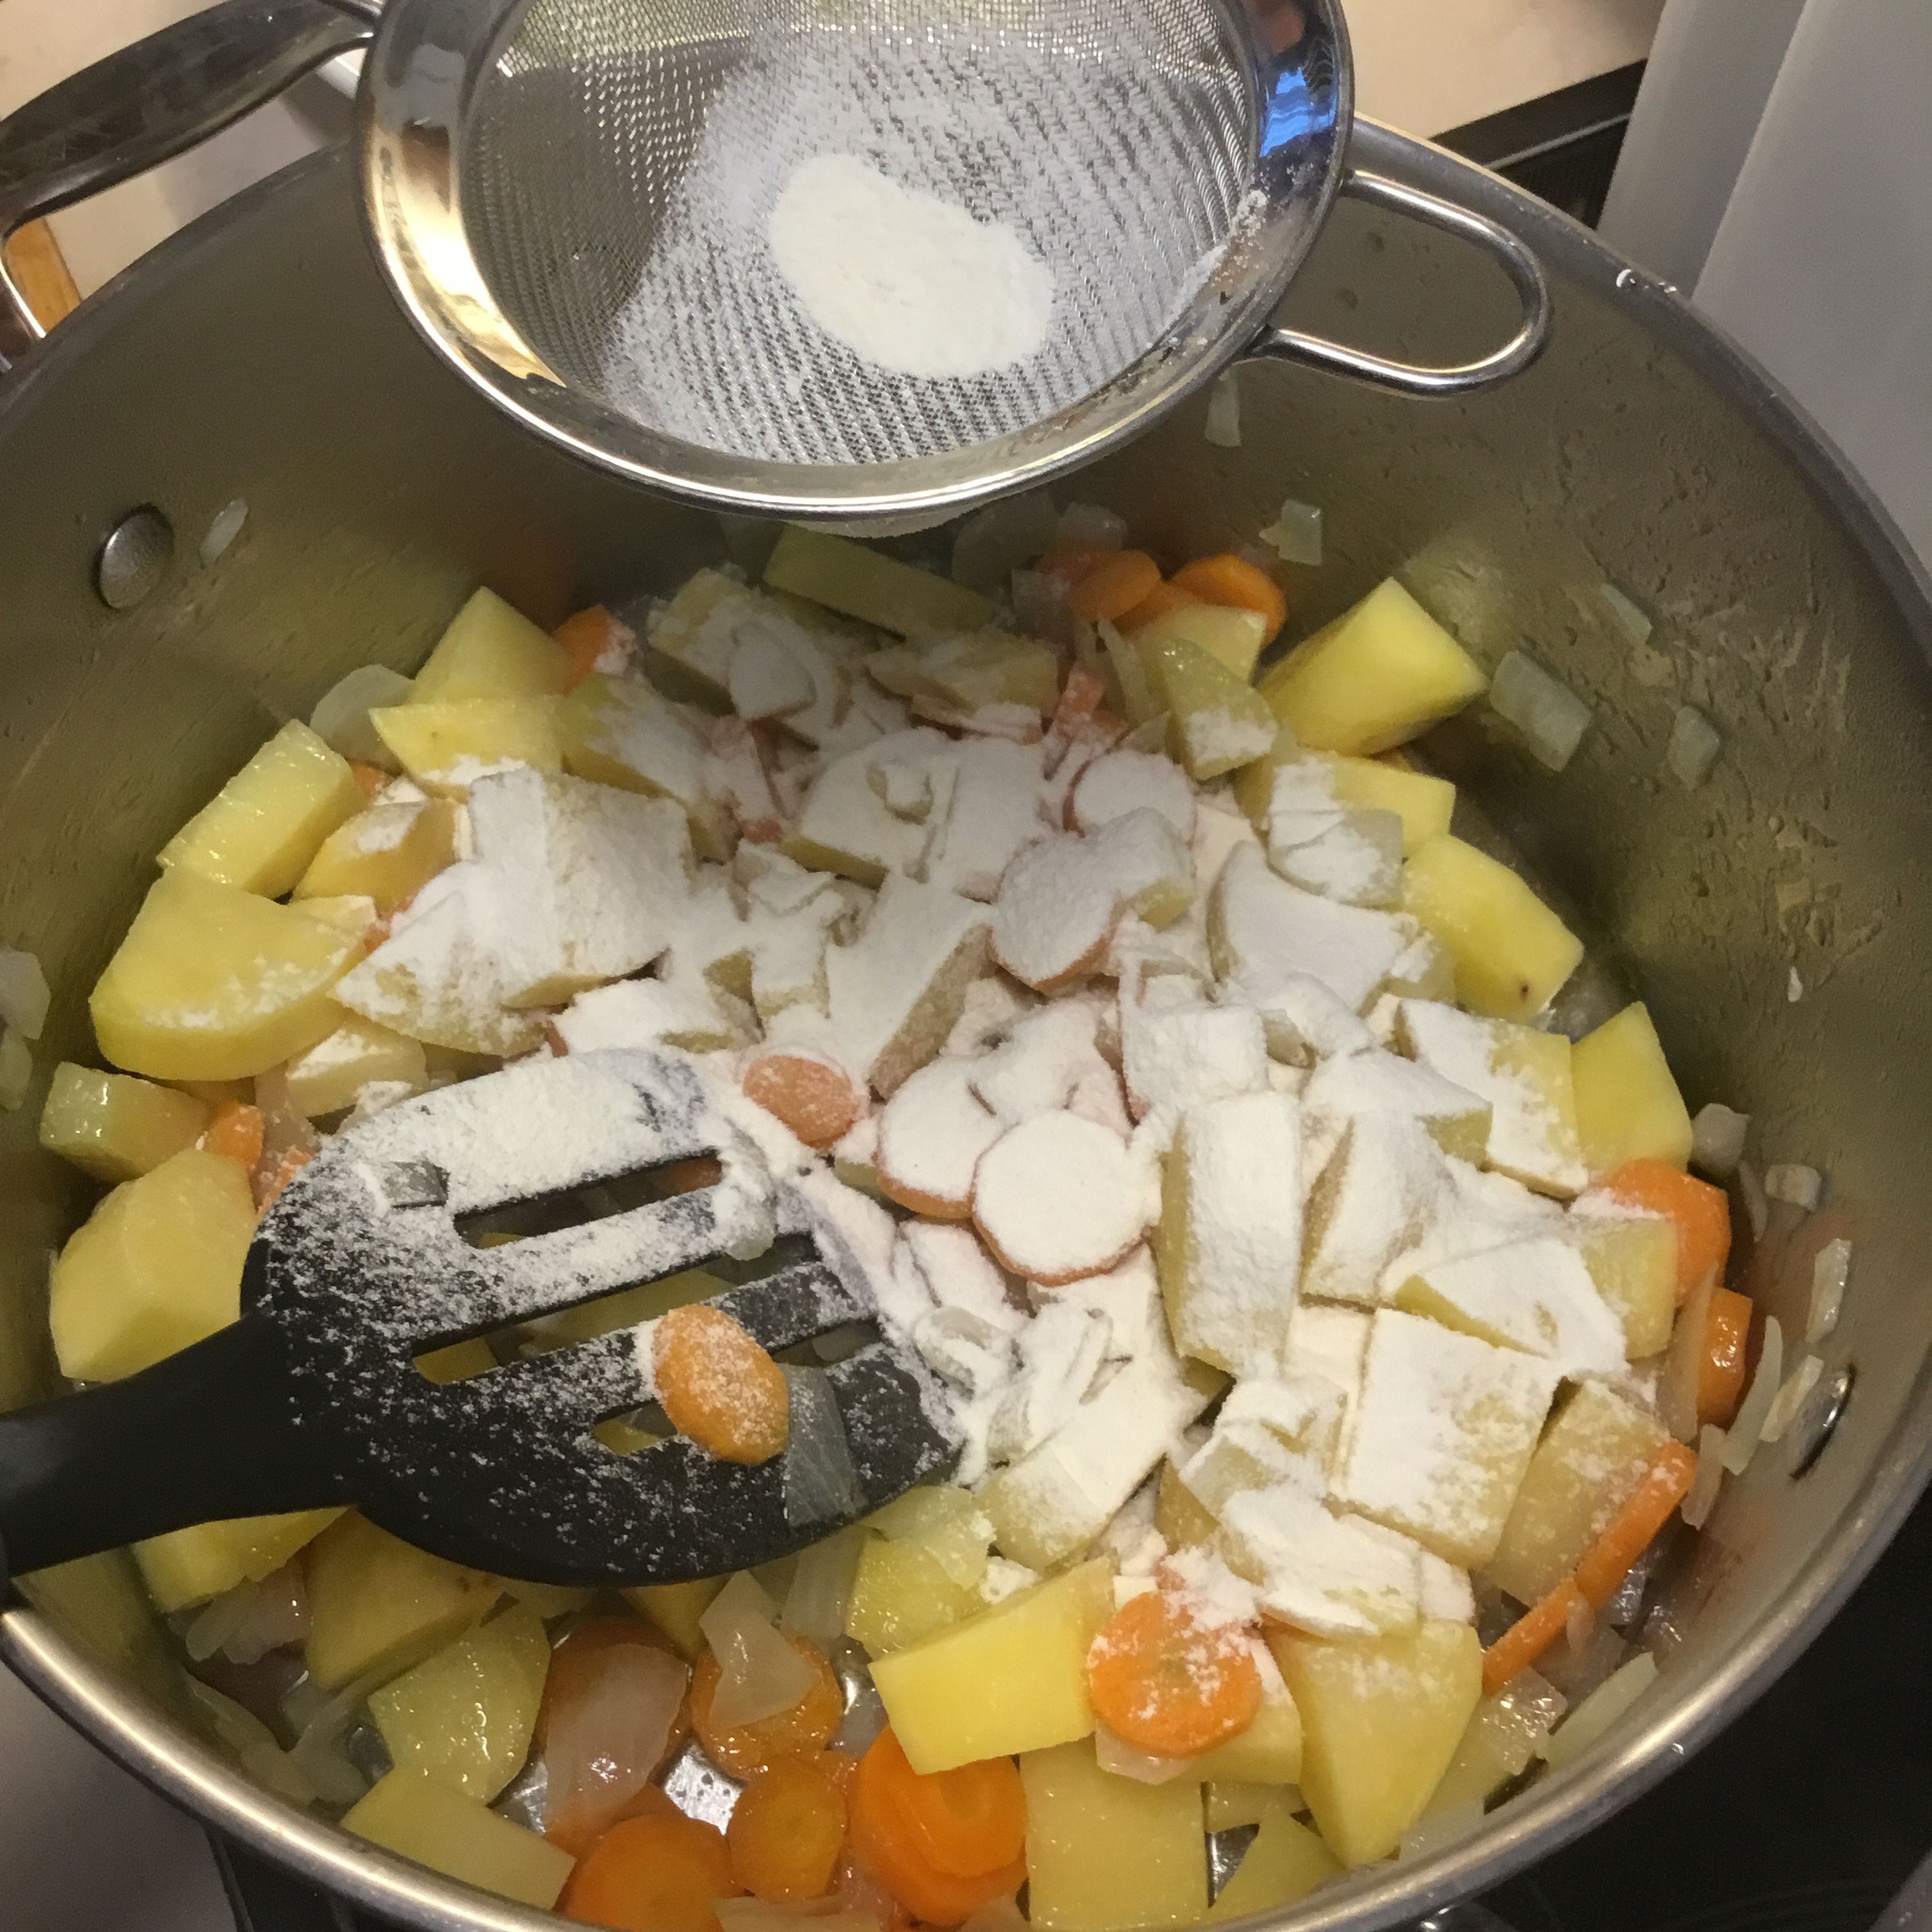 Das Kartoffel/Gemüsegemisch danach mit etwas gesiebtem Mehl bestäuben, umrühren und....